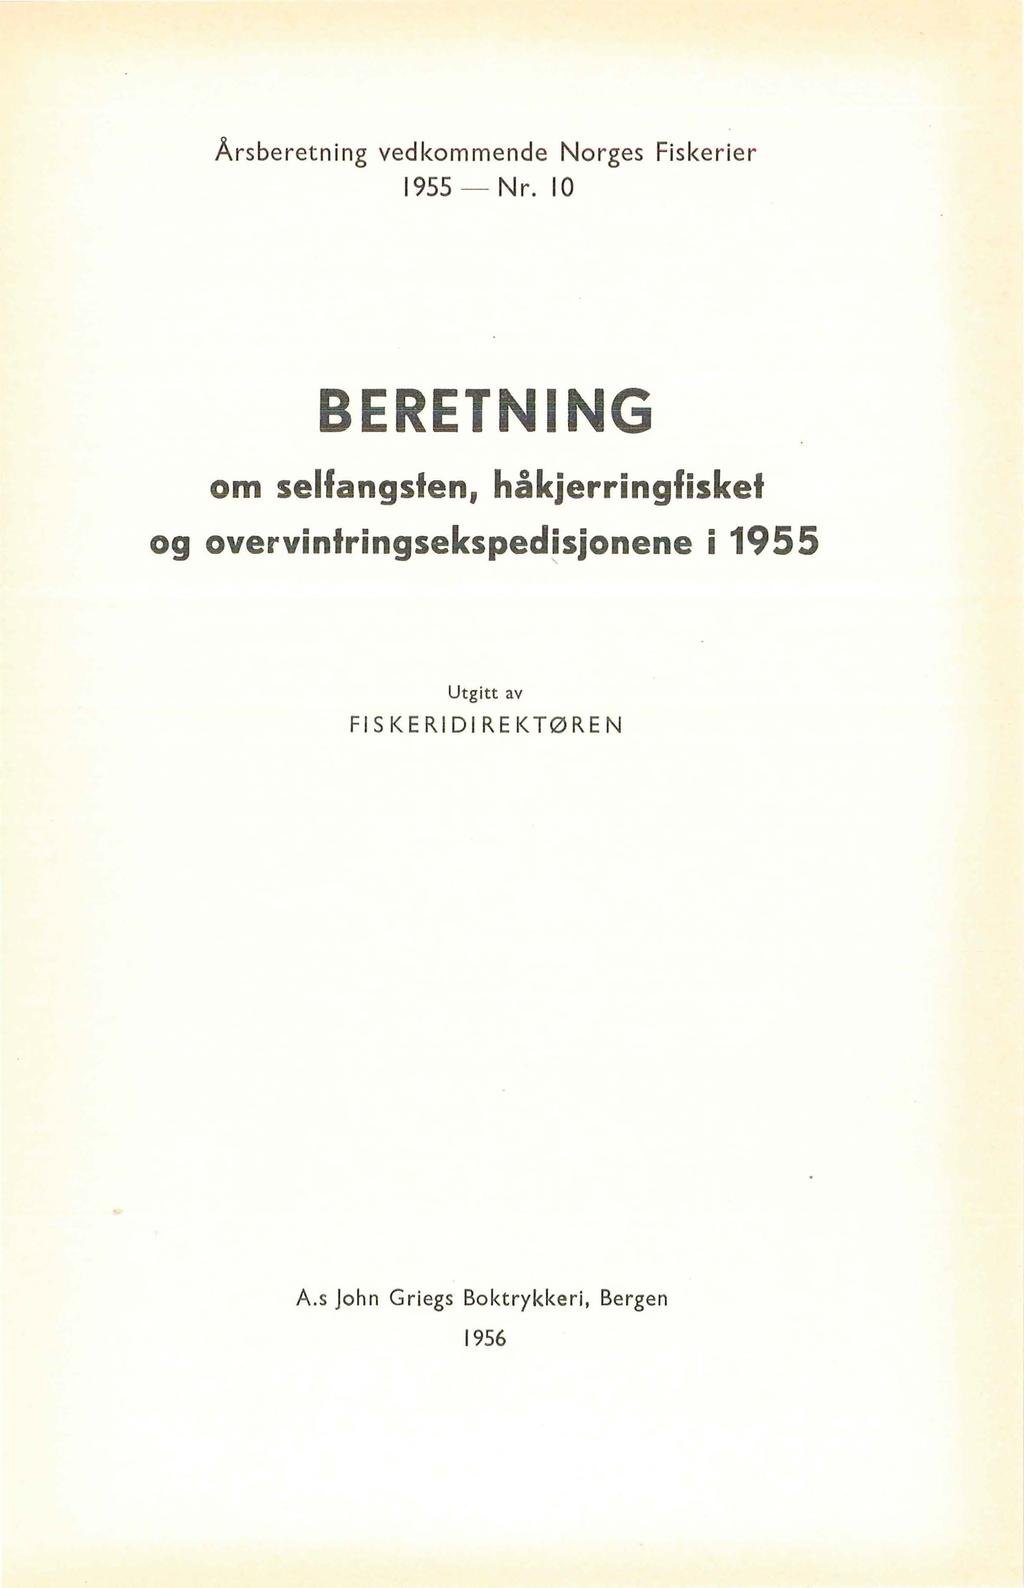 Årsberetning vedkommende Norges Fiske rier 1955 - Nr.